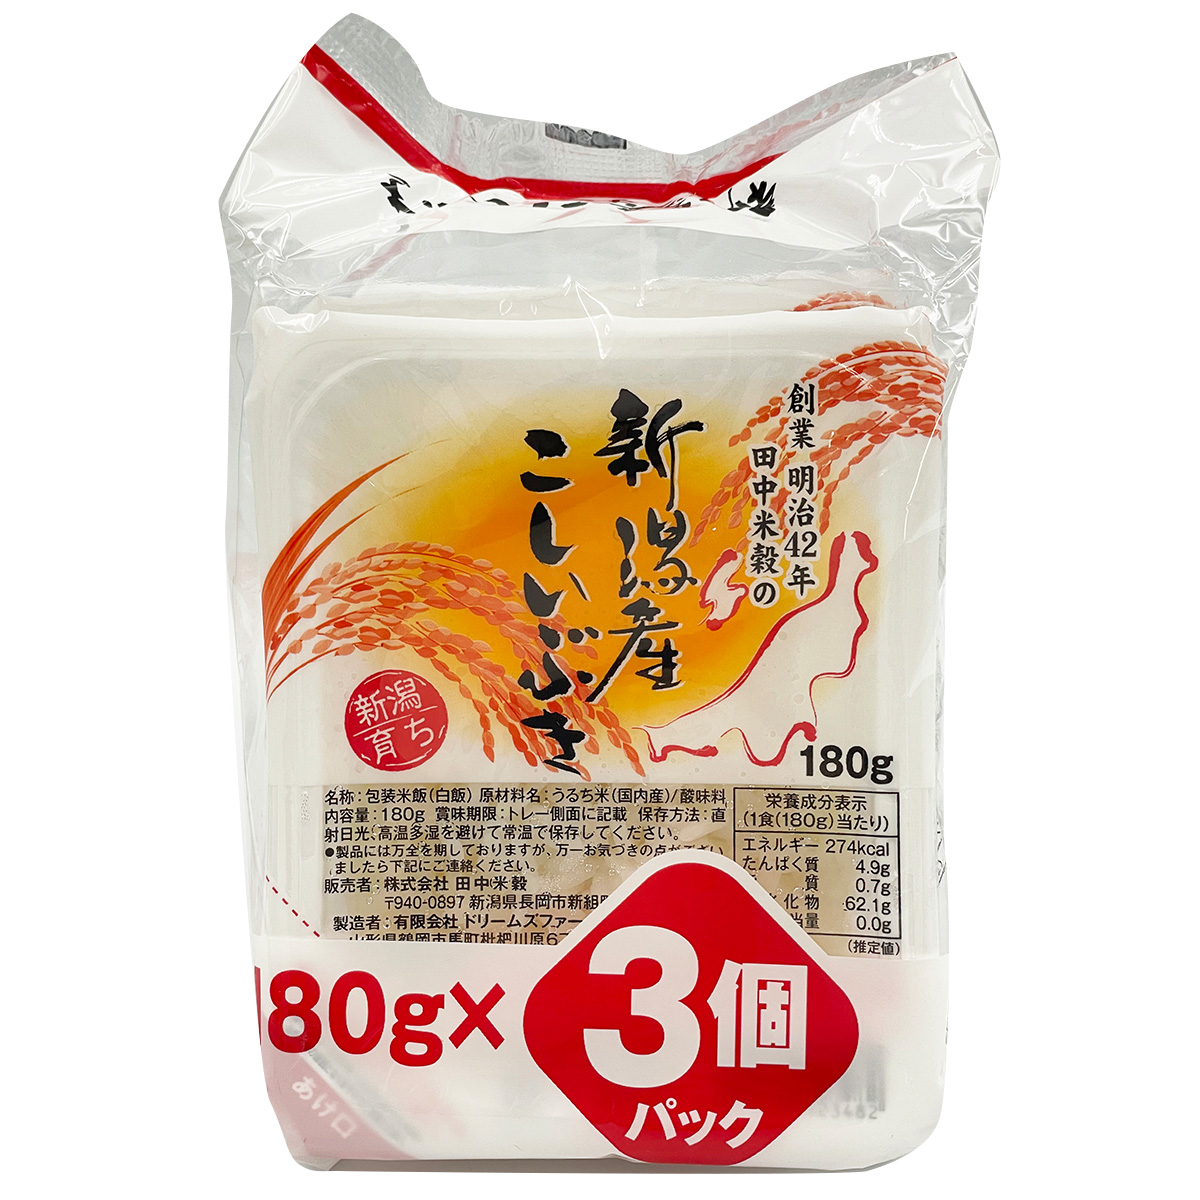 □パックご飯 新潟県産 こしいぶき 180g 3パック入り×24袋 保存食 備蓄 送料無料